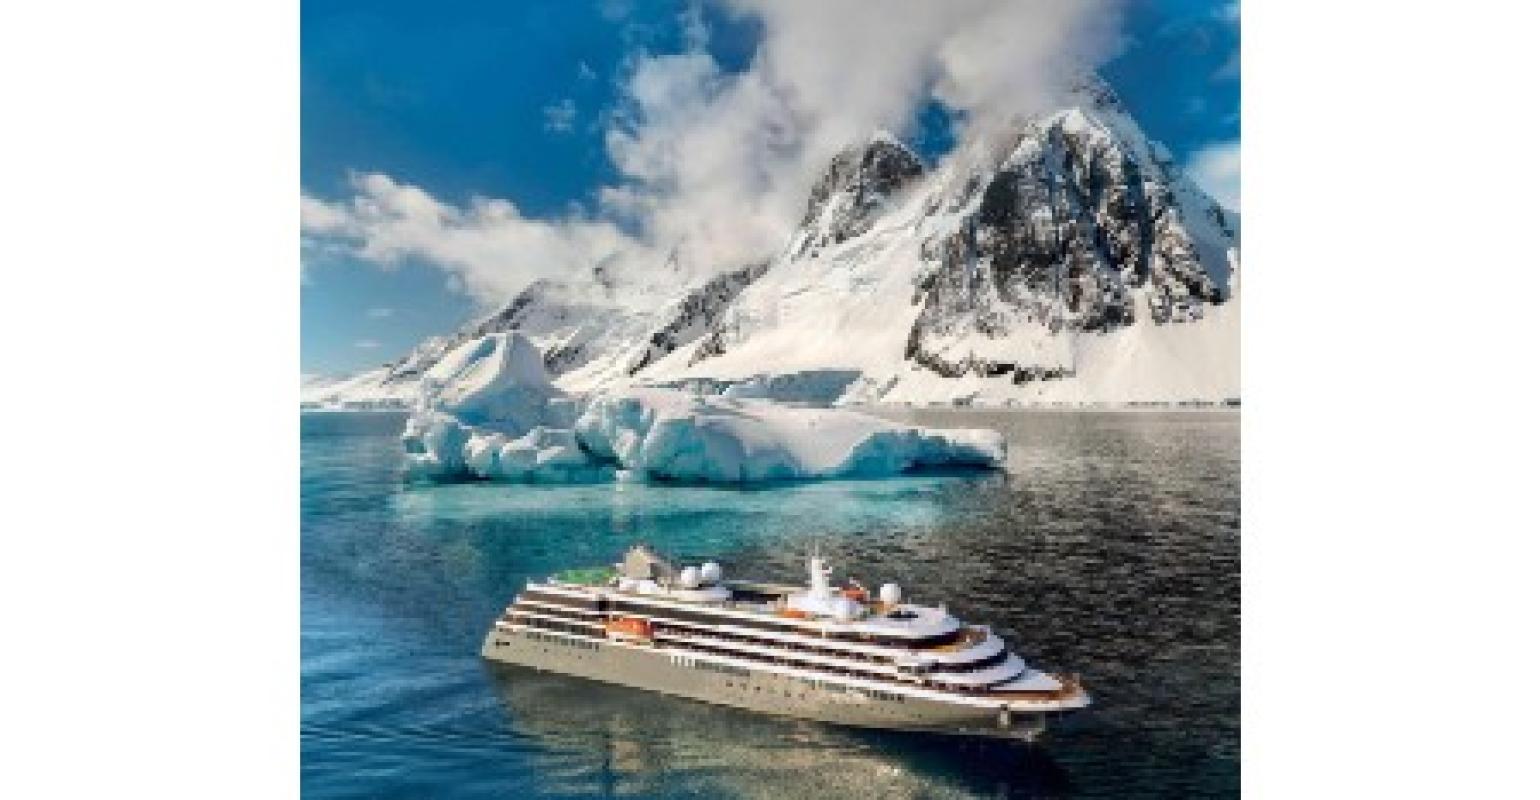 atlas cruise antarctica reviews